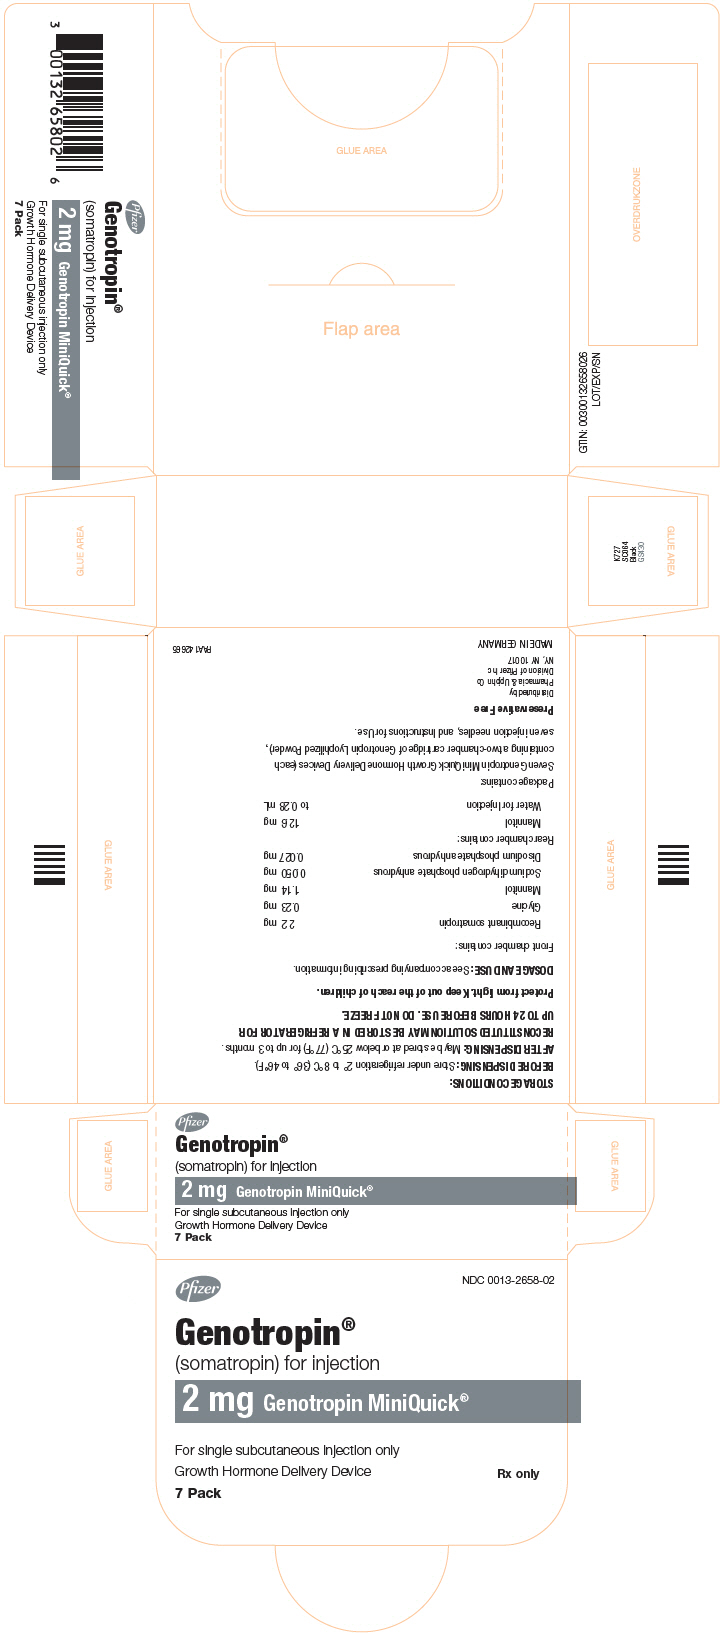 Principal Display Panel - 2 mg Kit Carton